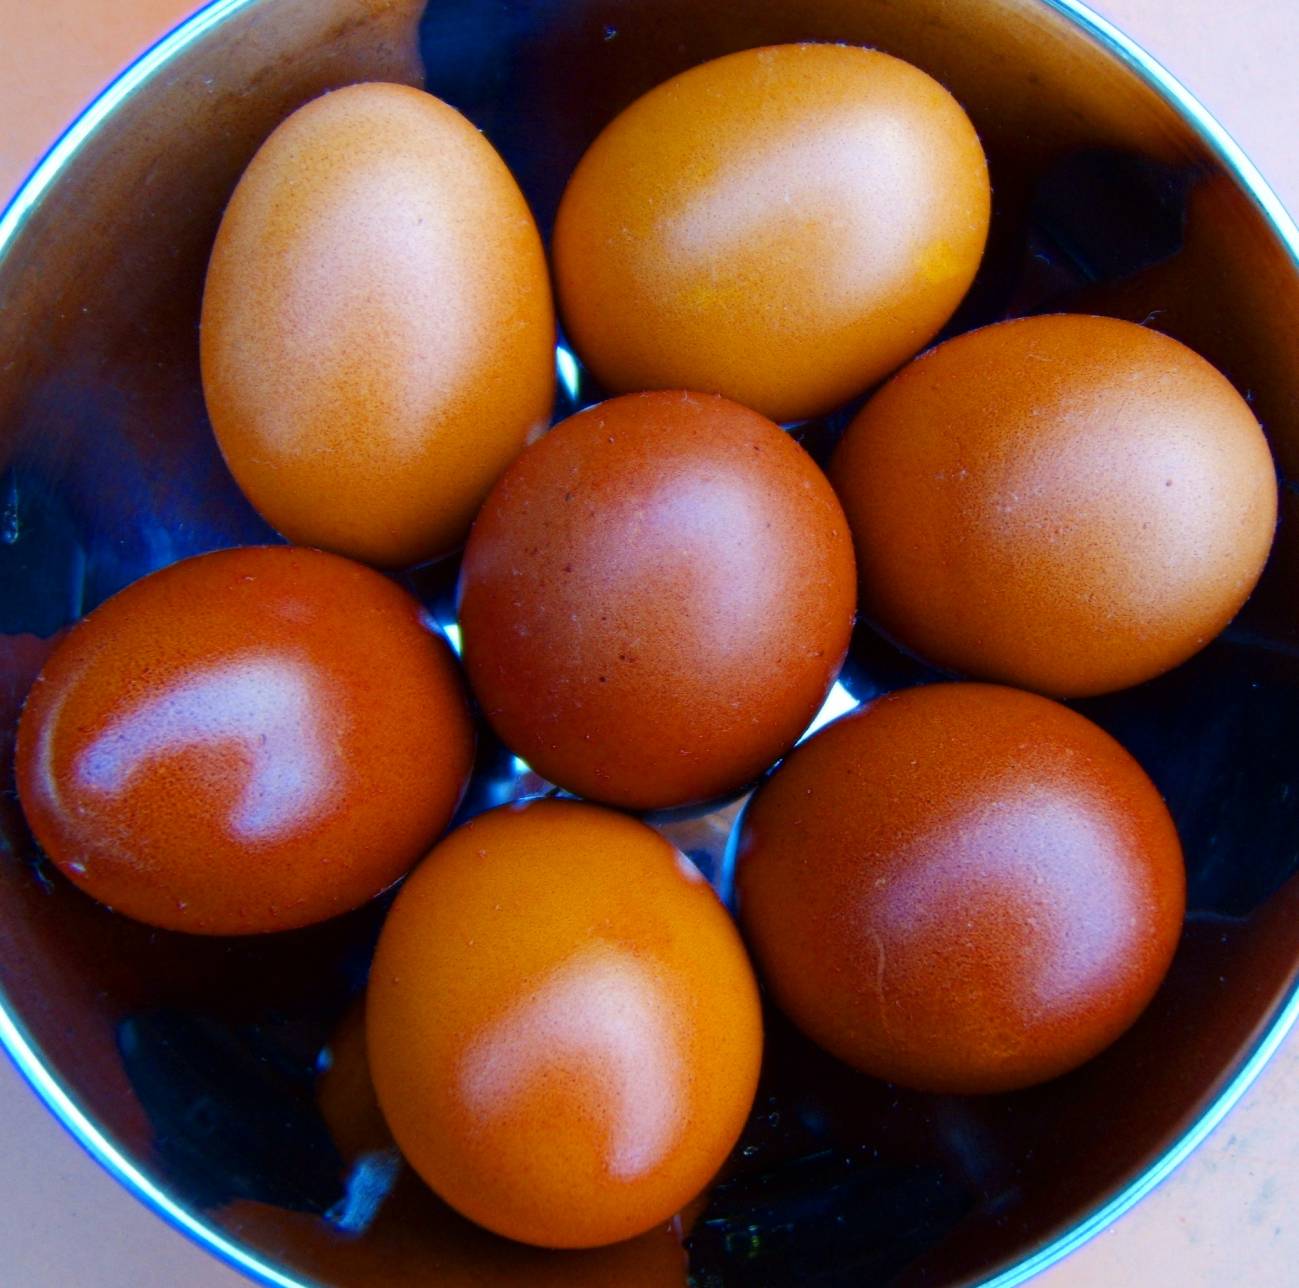 La ingesta de huevos puede servir para reducir la presión sanguínea